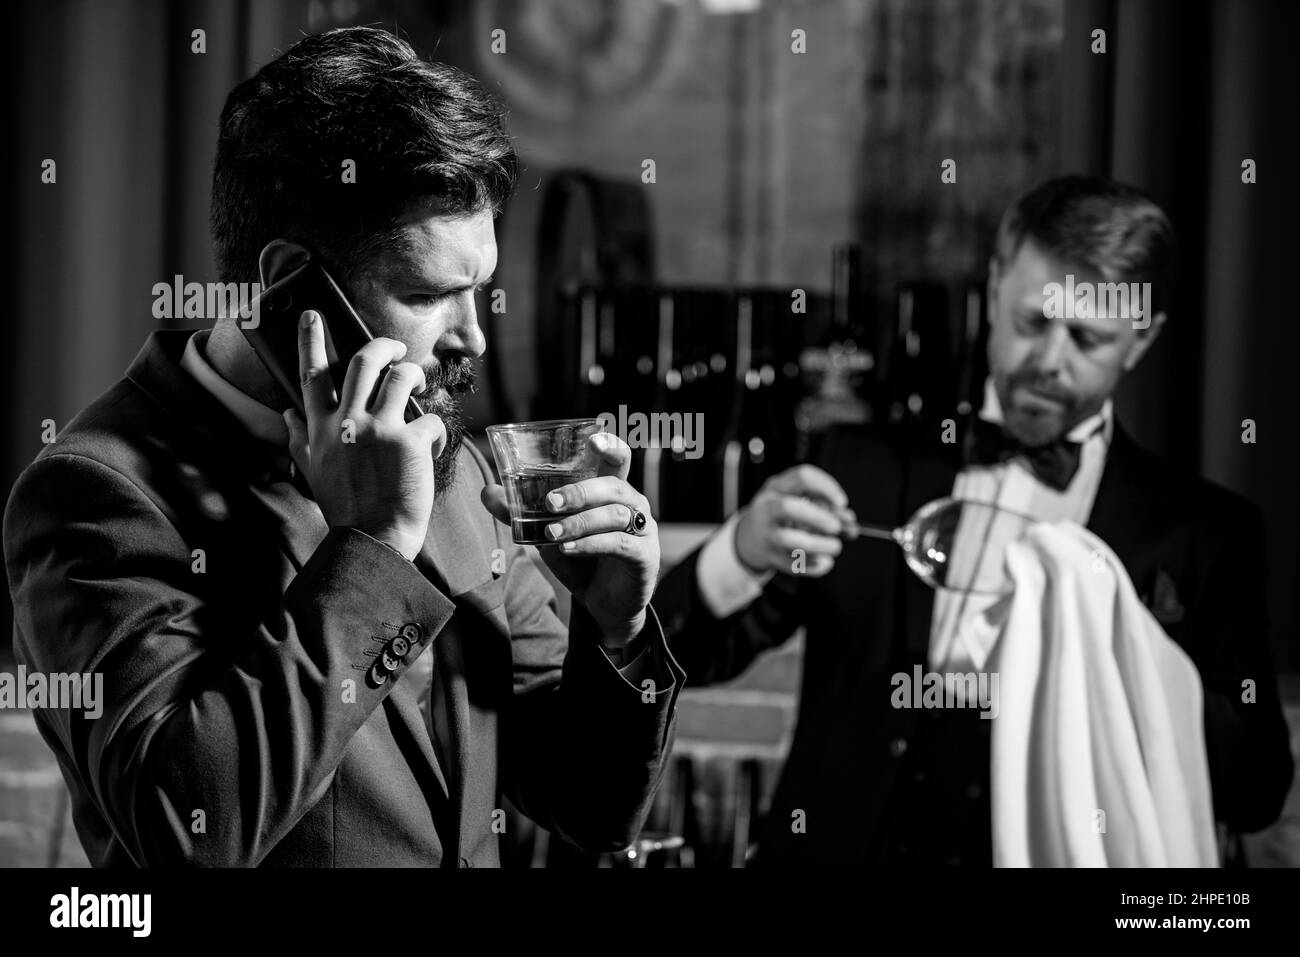 Boisson Gentlemans. Whisky en verre. Concept de bartending. Barman au comptoir. Taille basse au bar. Banque D'Images